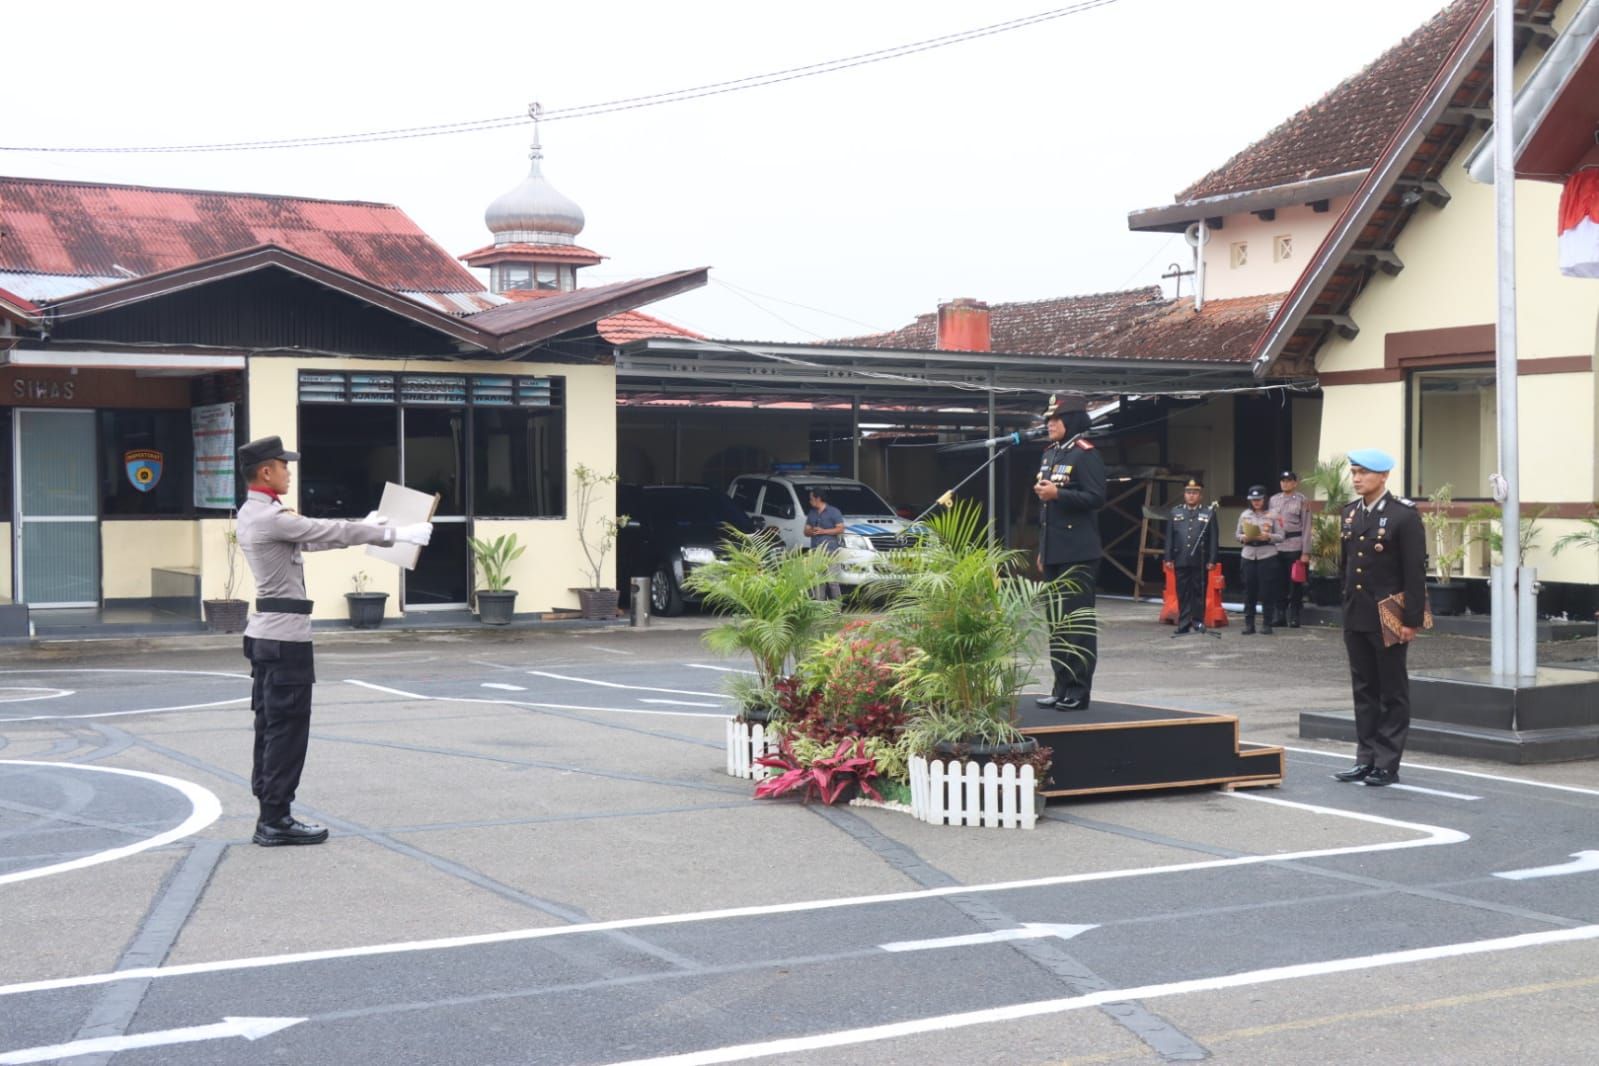 Salah satu rangkaian kegiatan upacara bendera yang diselenggarakan oleh jajaran Polresta Bukittinggi, Sumatera Barat